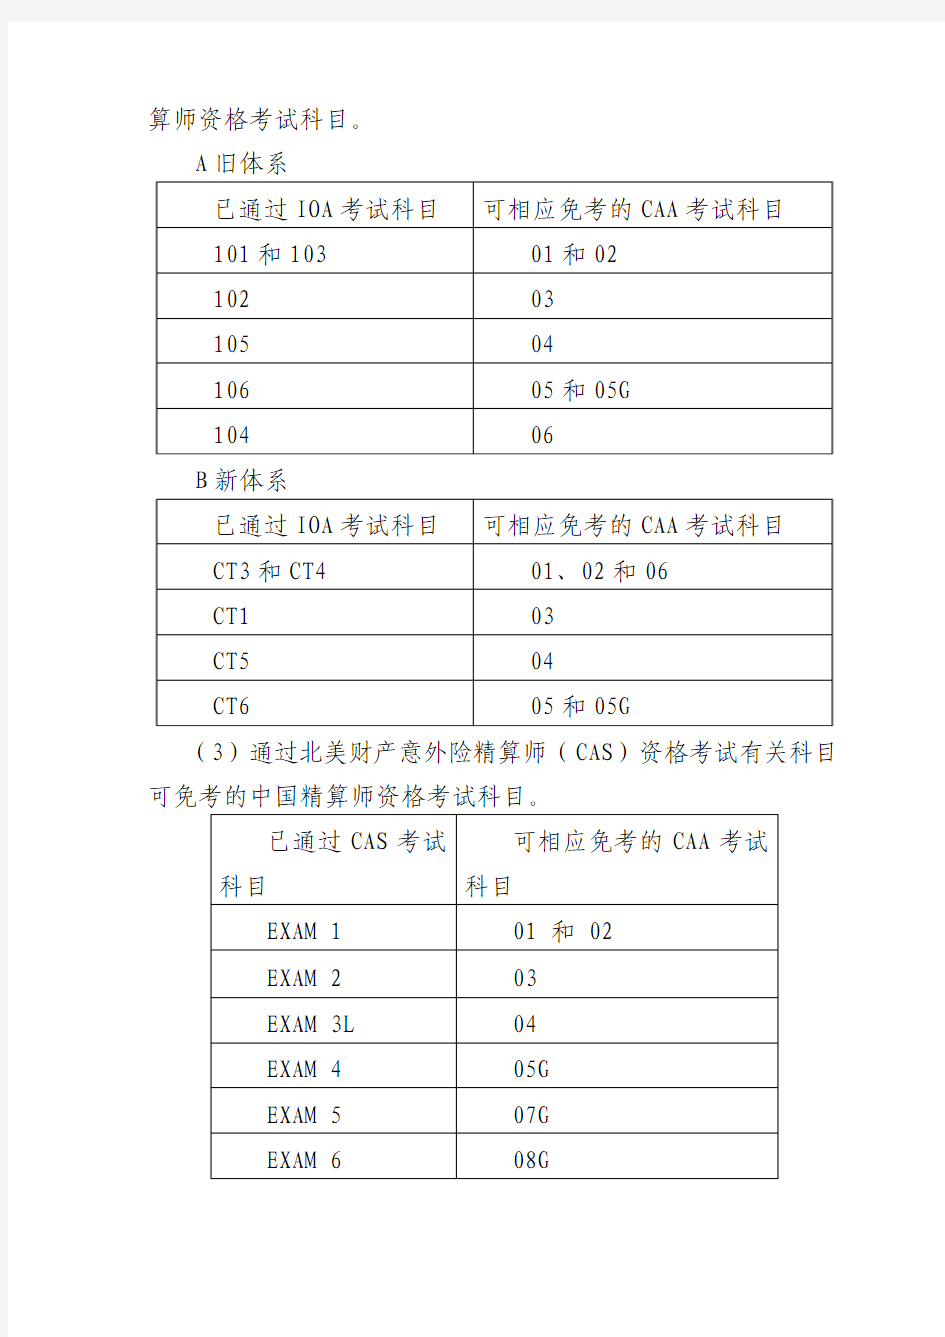 中国精算师资格考试部分科目转换对照表(2010.11.4)